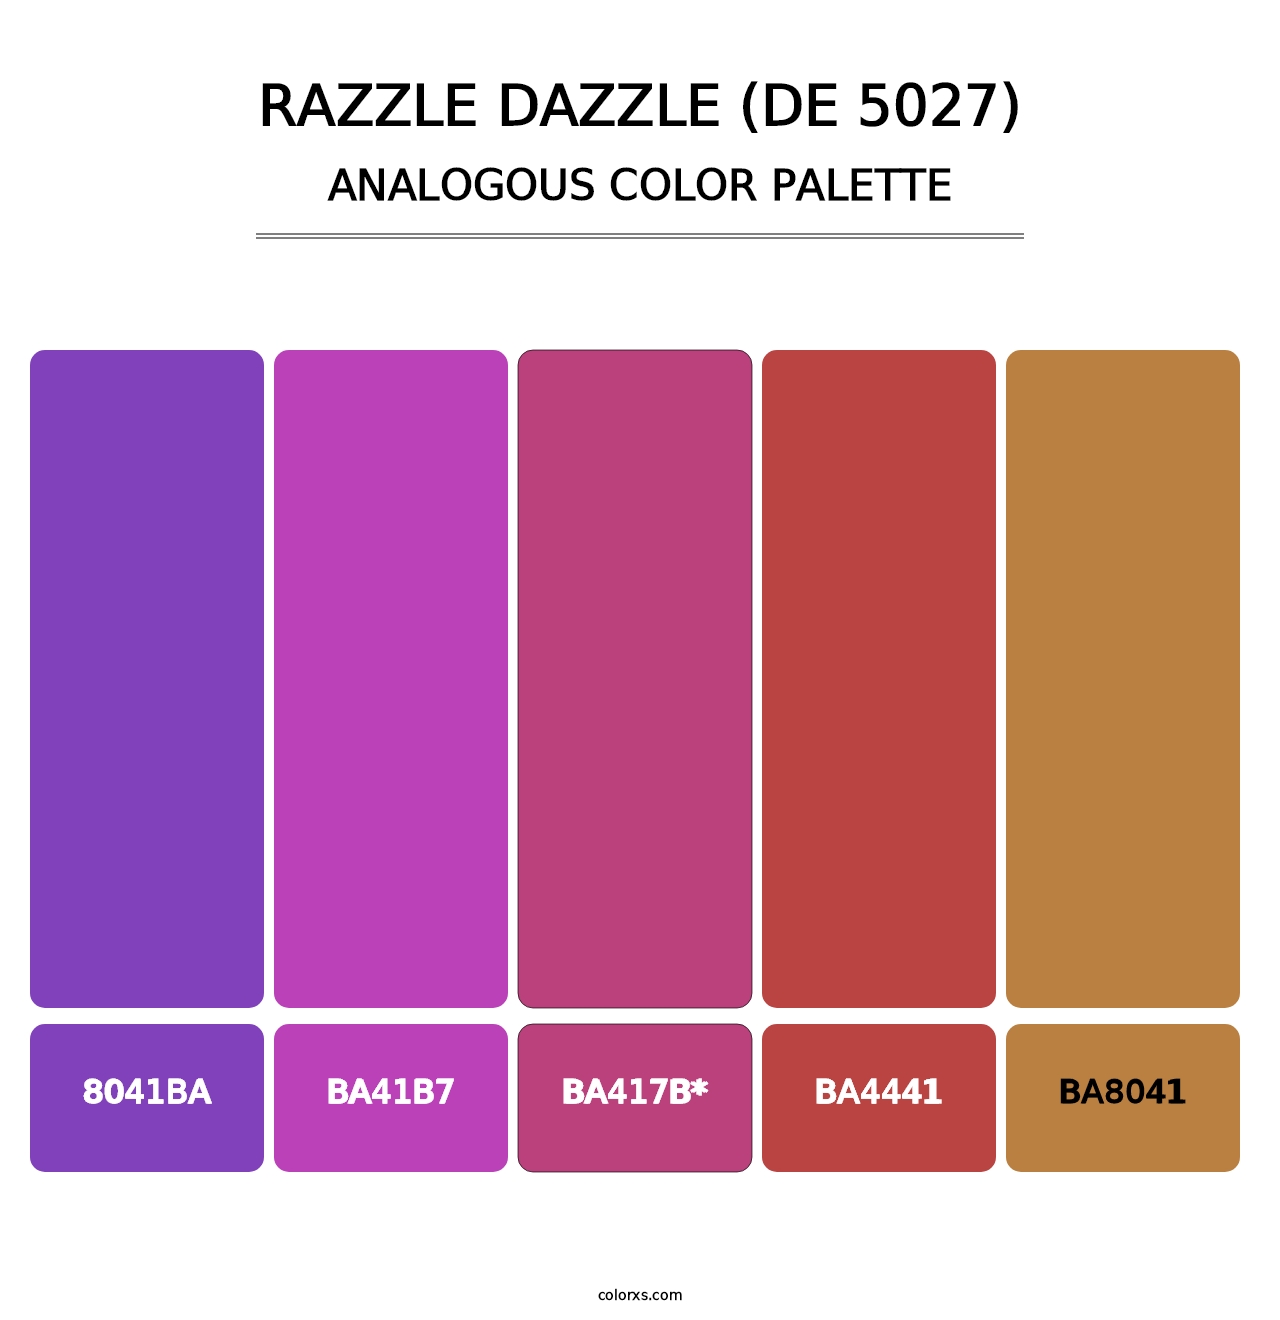 Razzle Dazzle (DE 5027) - Analogous Color Palette